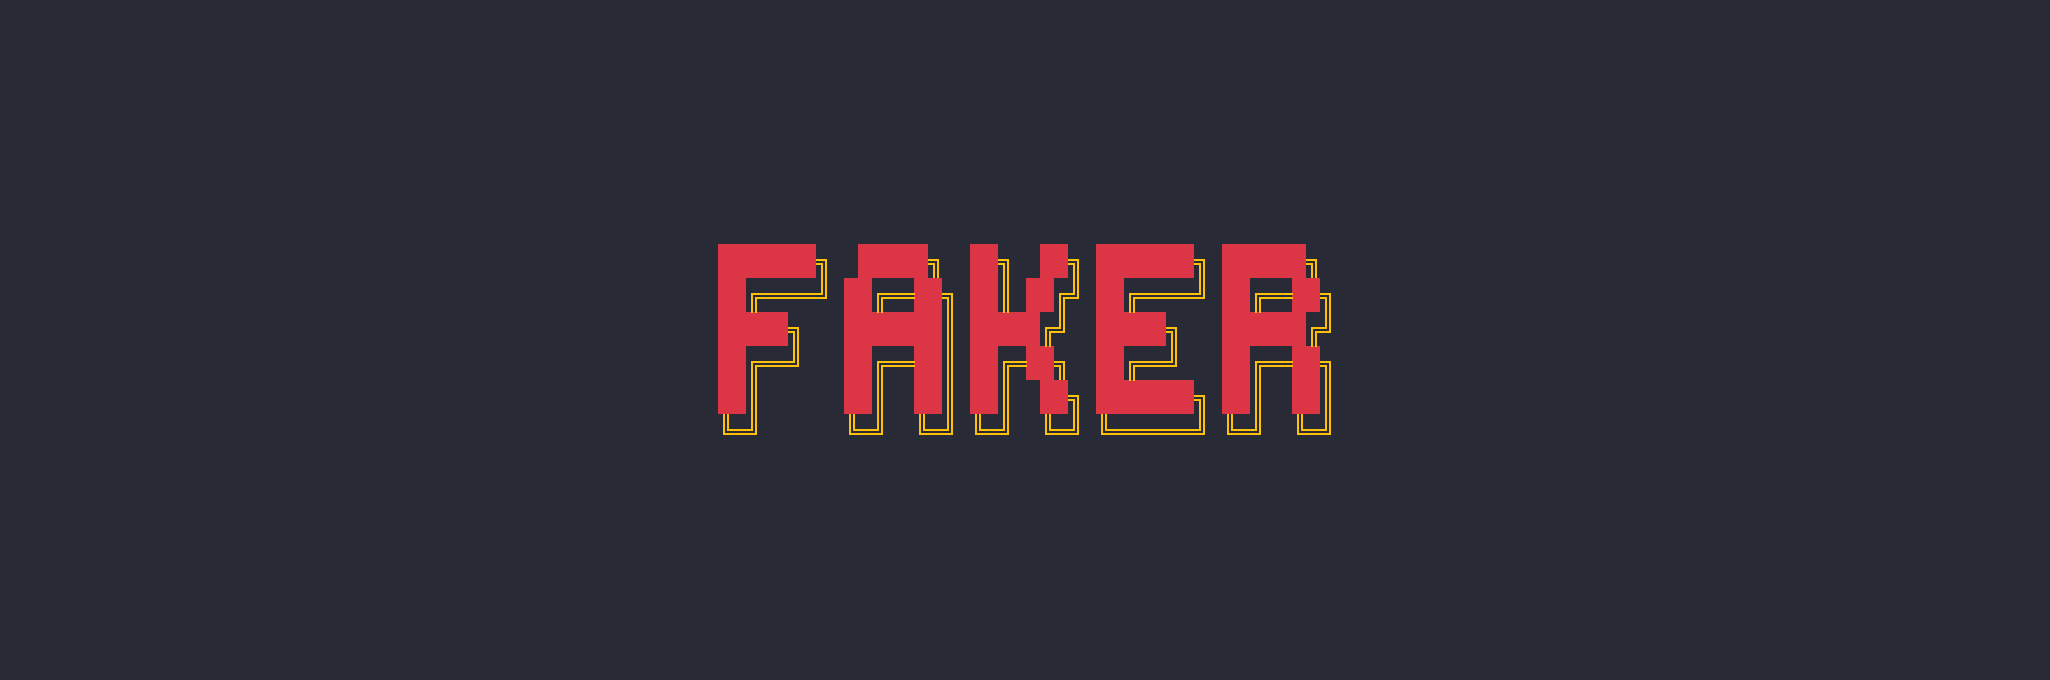 Open Faker for custom/community modules · Issue #704 · faker-js/faker ·  GitHub